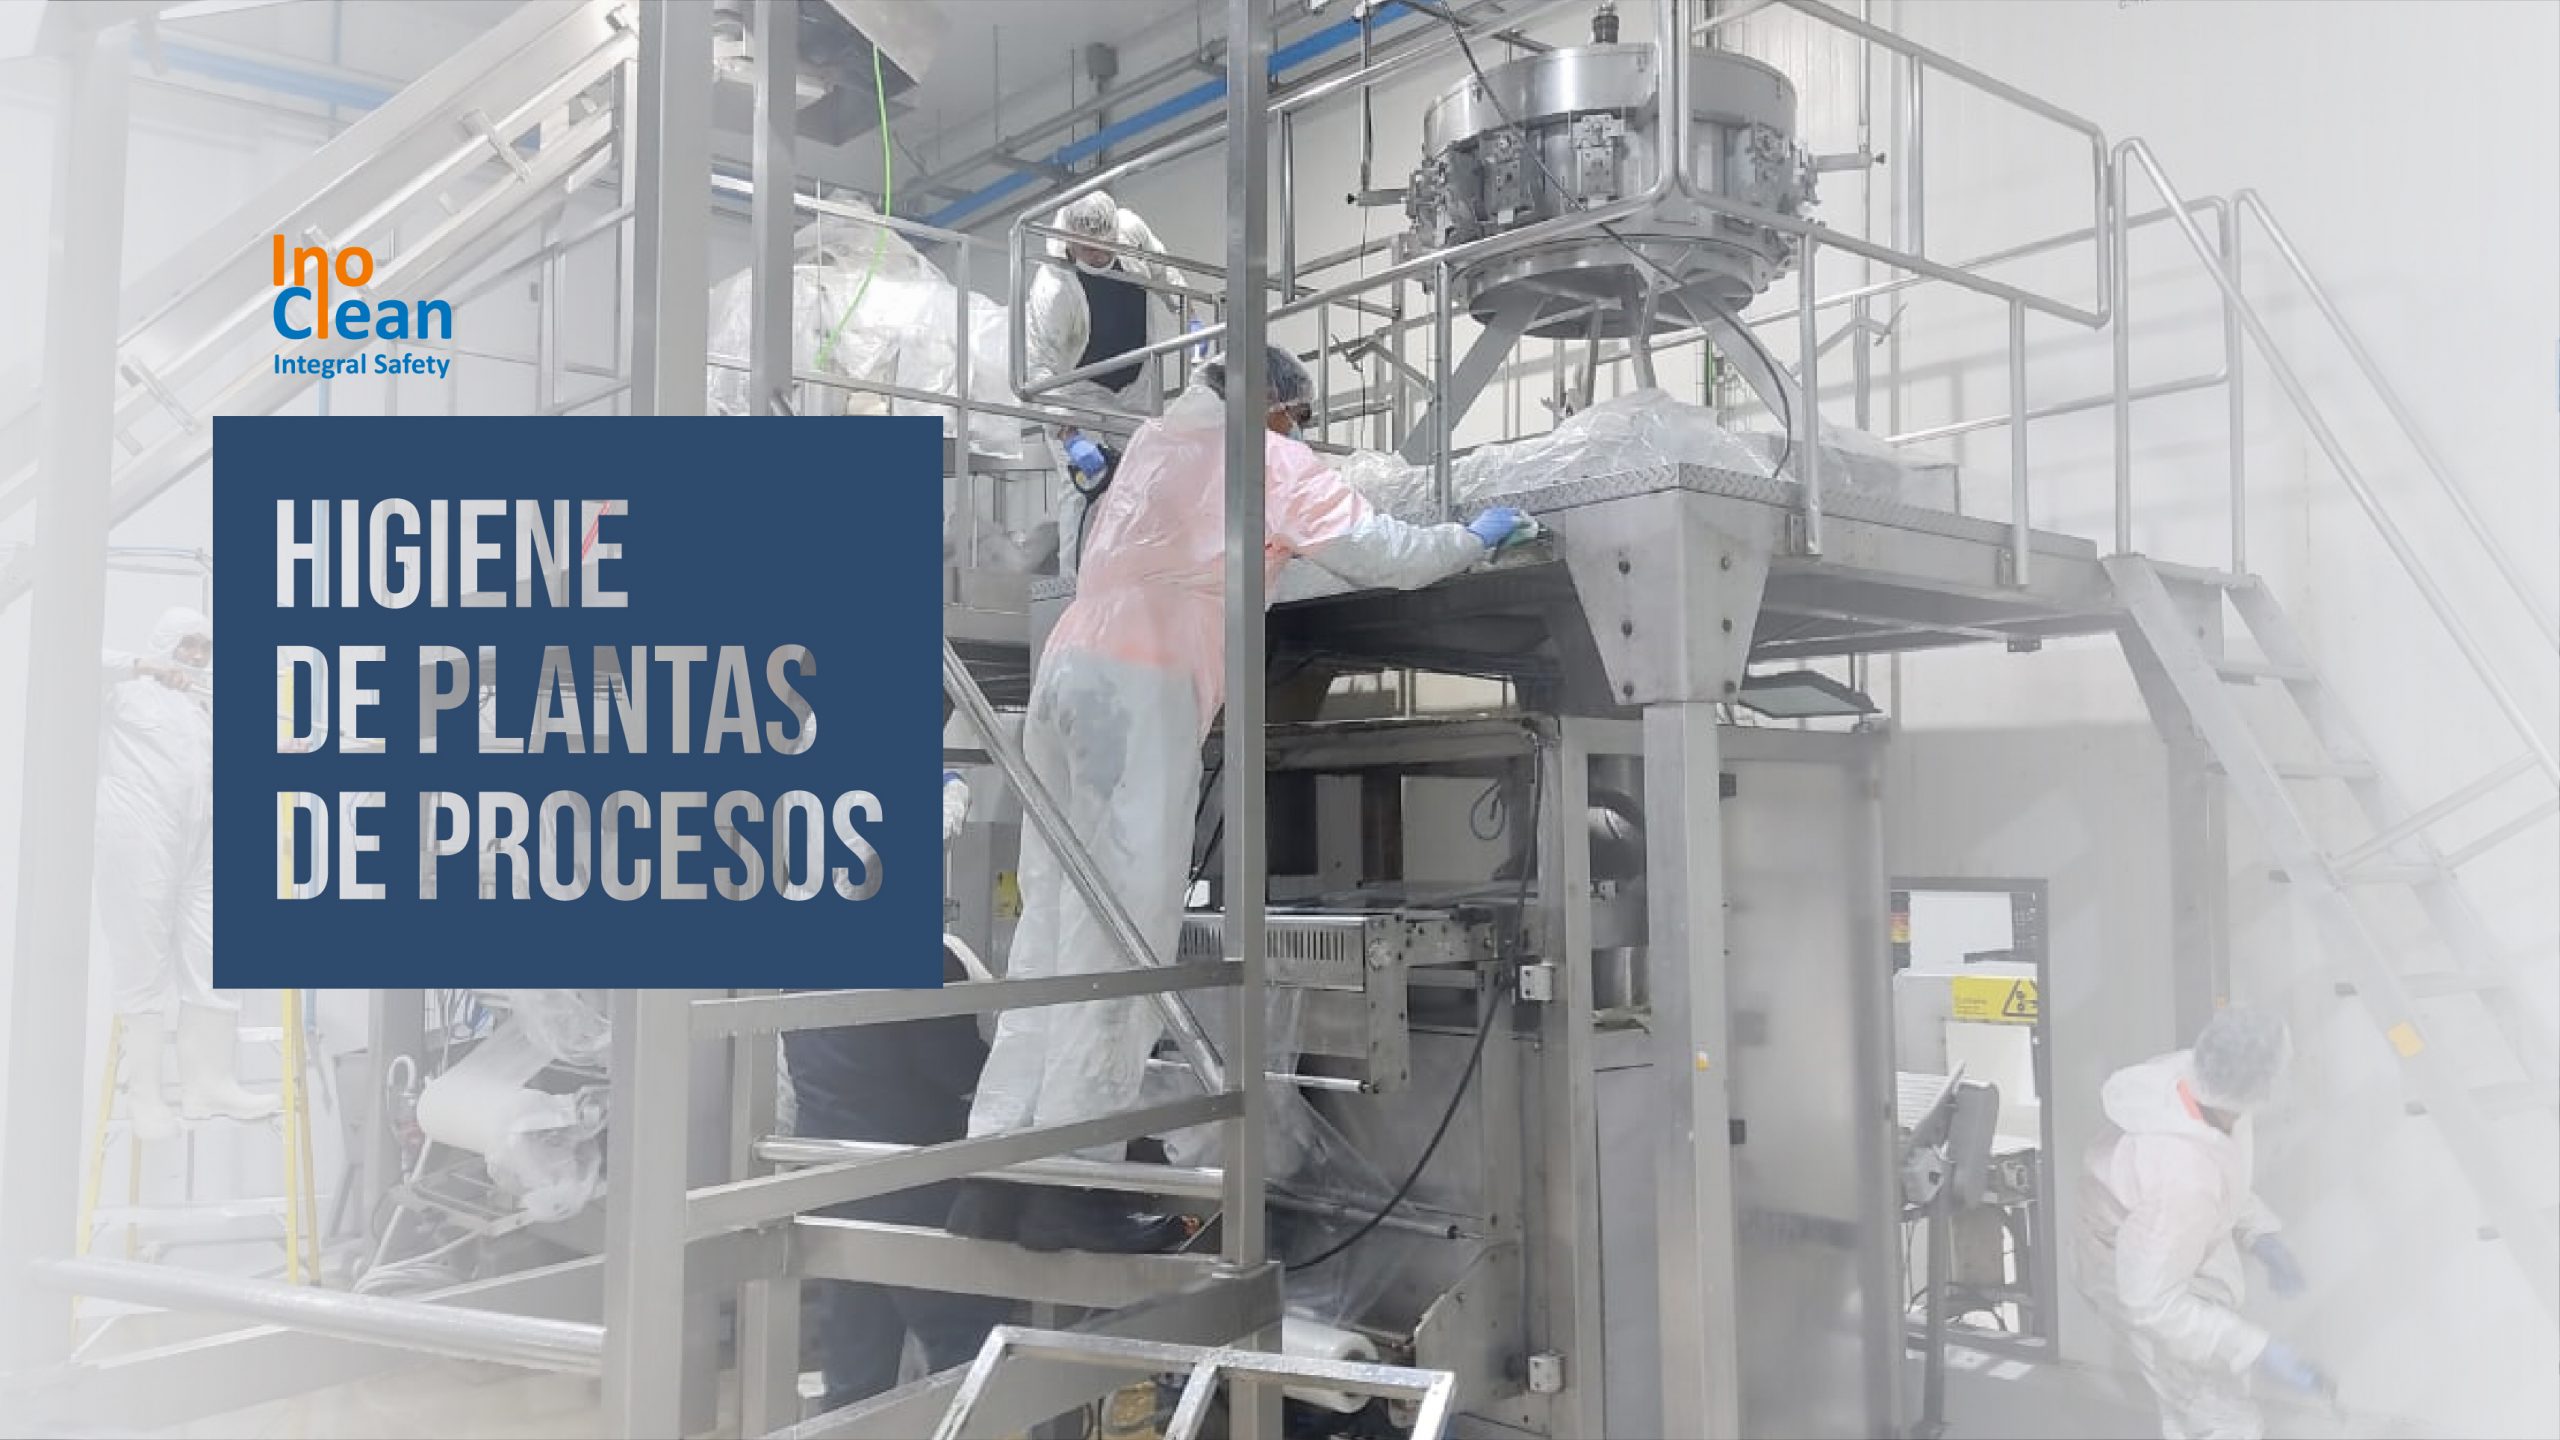 Maquinaria en la moderna planta de procesos de higiene Inoclean, mostrando el escalado de producción.